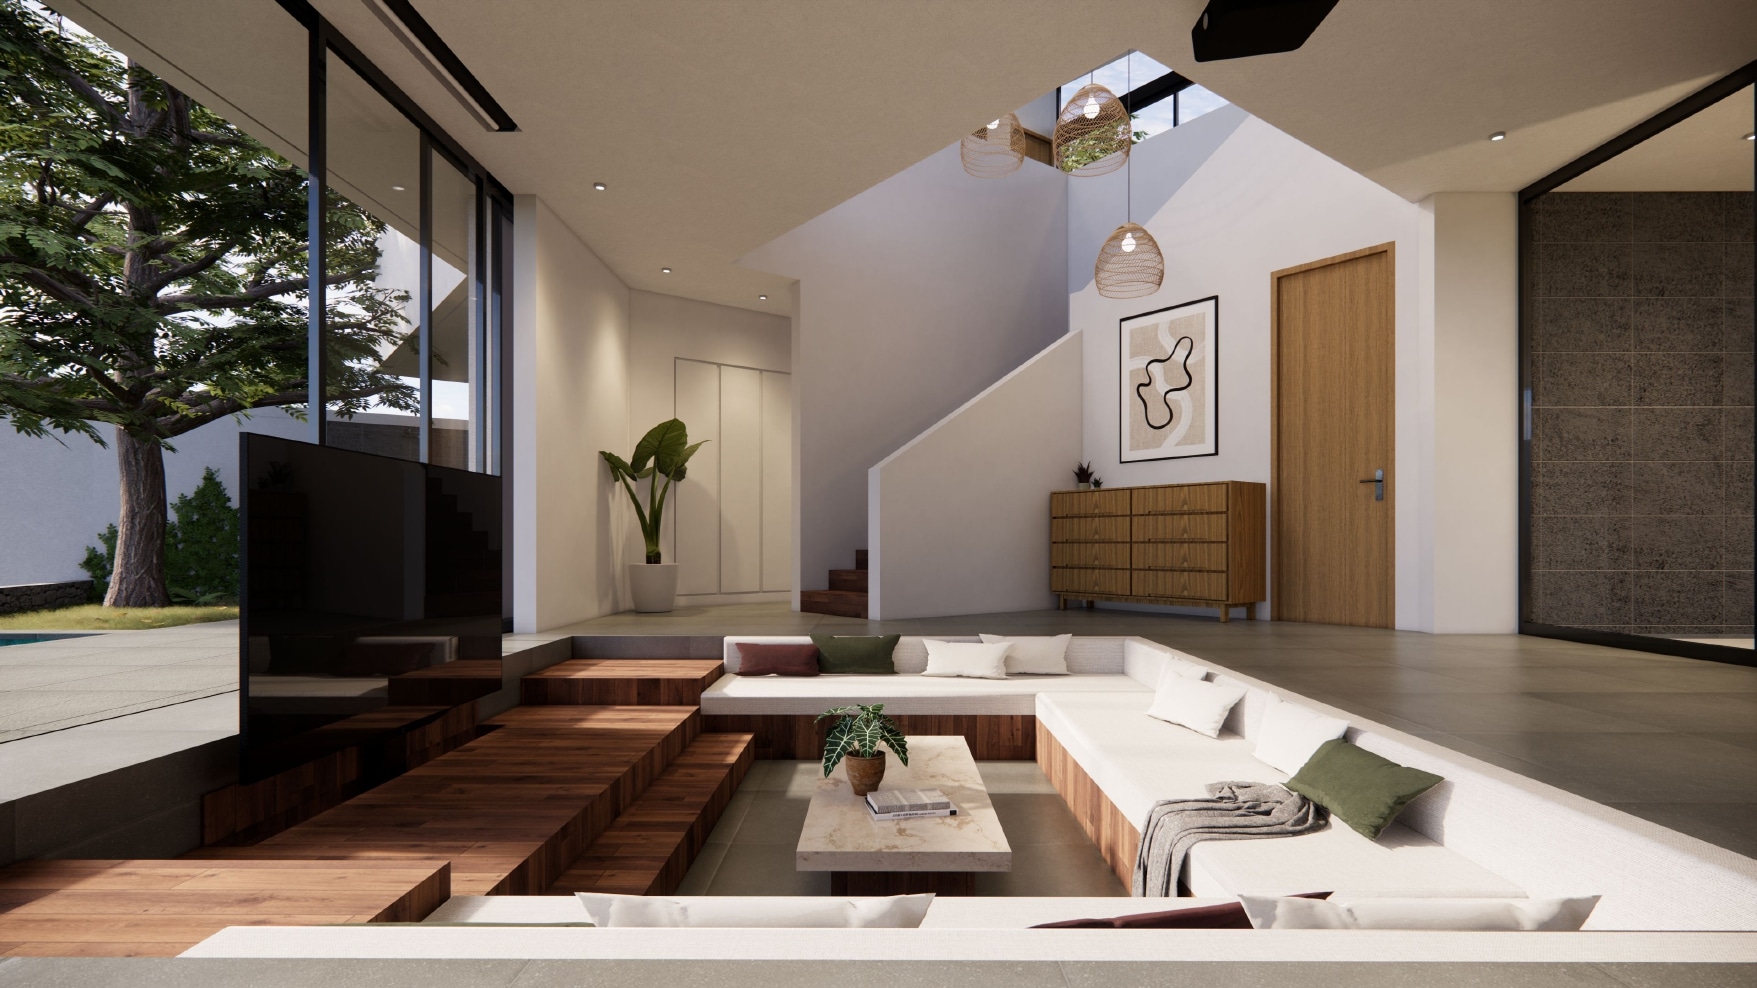 Design Assembly - Anyar 5 Villa - Bali Architect - Interior Design - Bali Villa - Living Room - Wooden Facade - Wall Facade